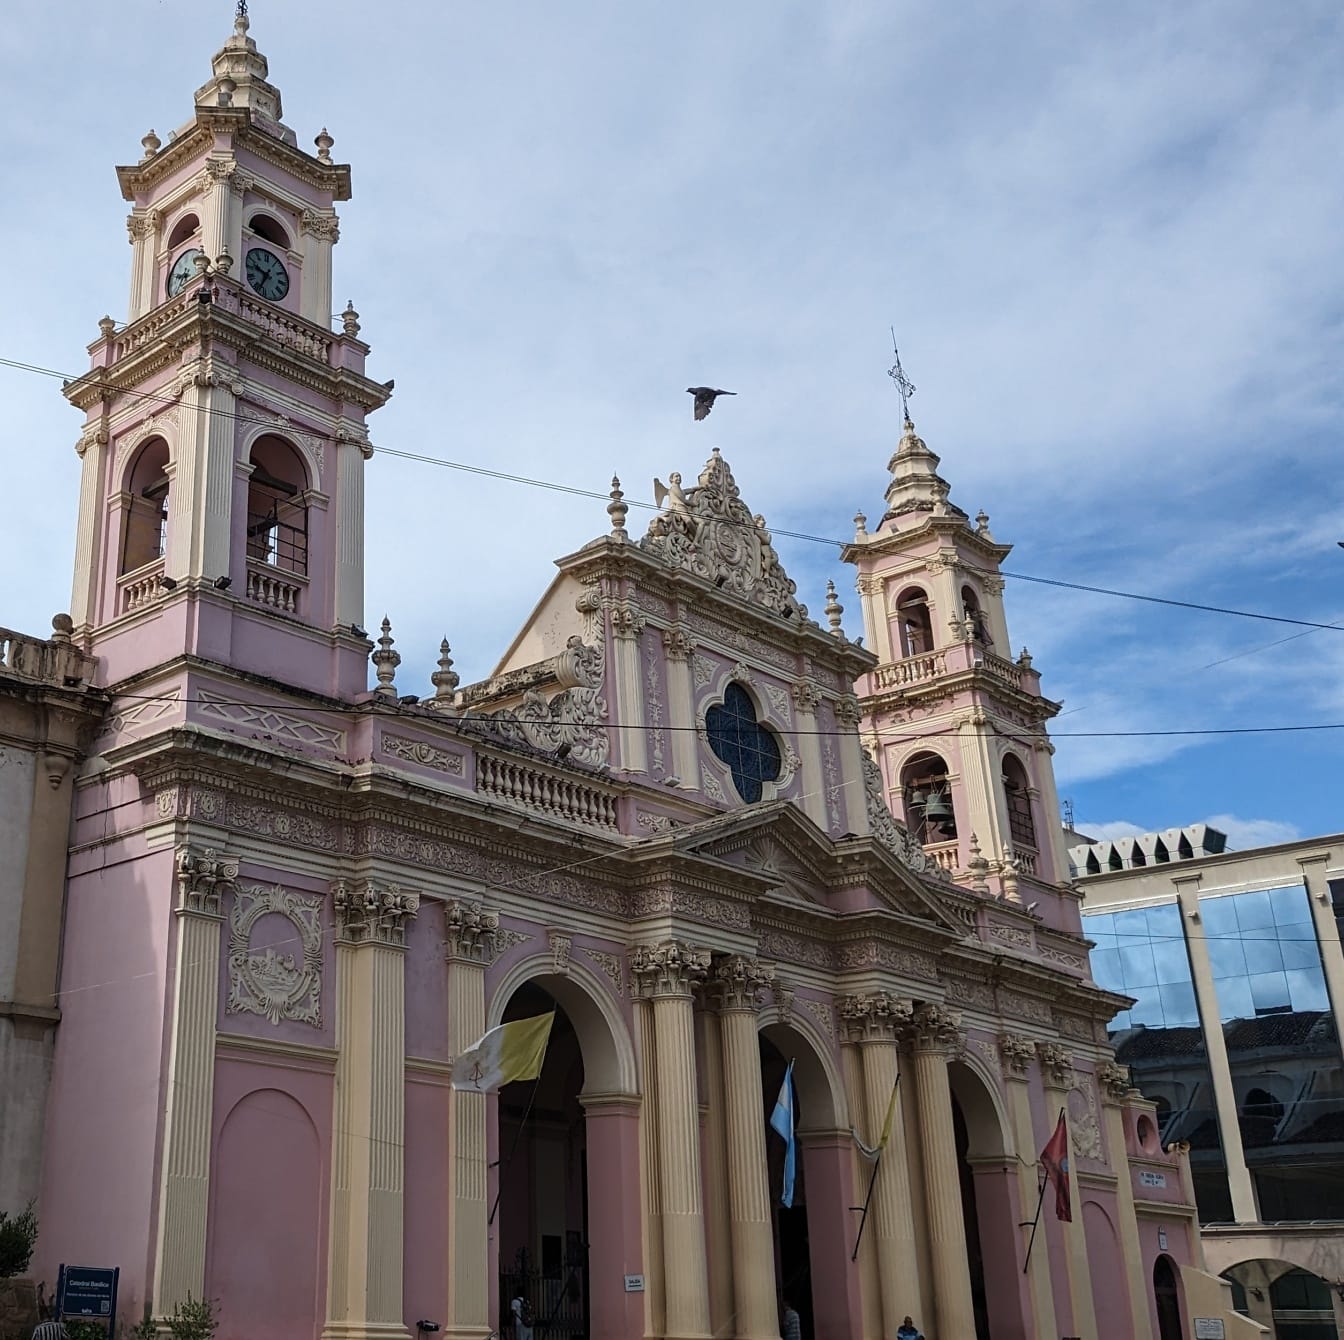 Arjantin’deki Salta Katedrali Bazilikası, duvarlarda pembemsi renk ile kolonyal mimari tarzda